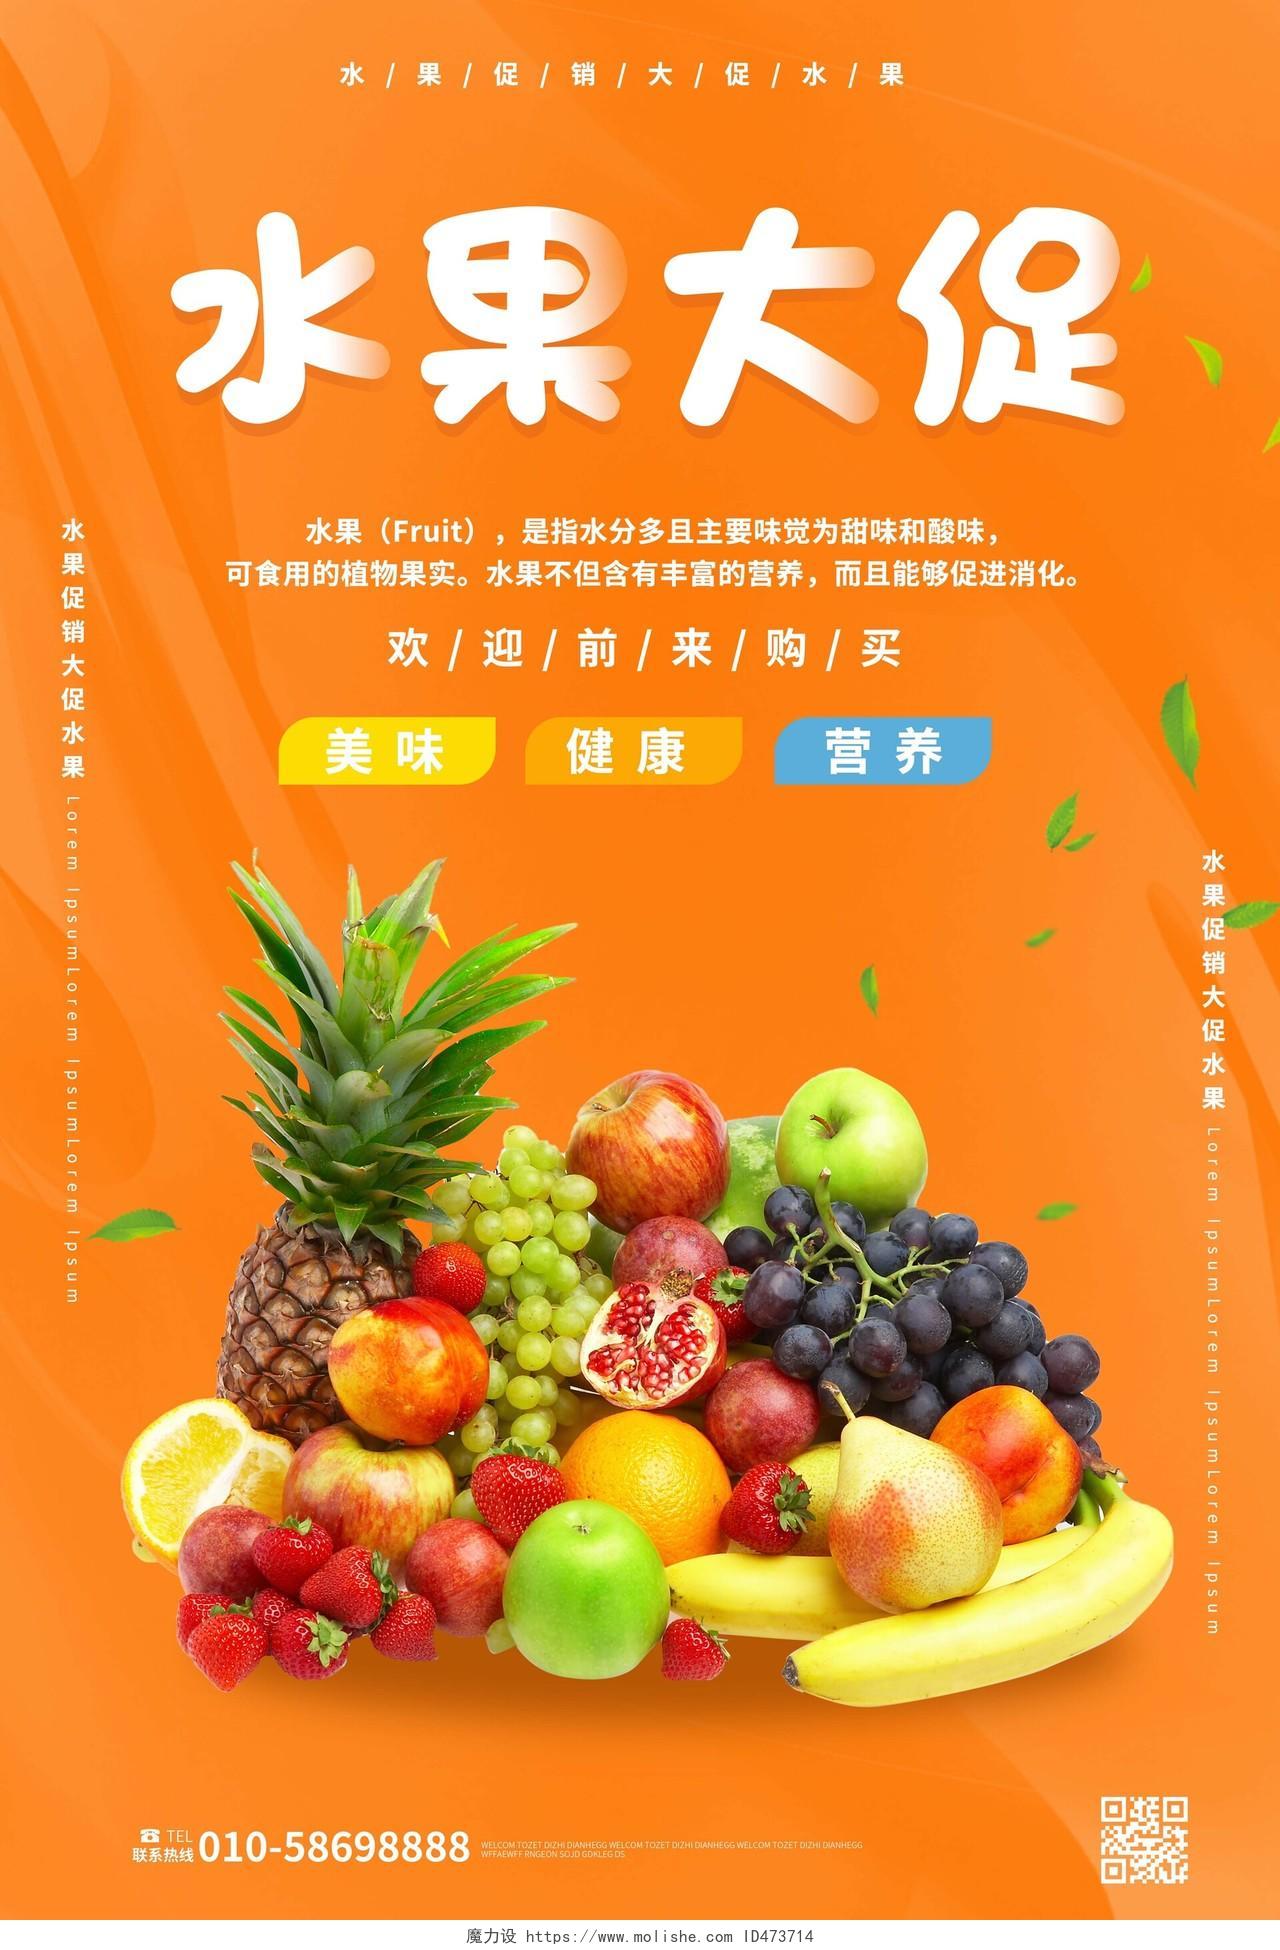 橙色创意简洁水果大促水果店促销宣传海报设计水果海报